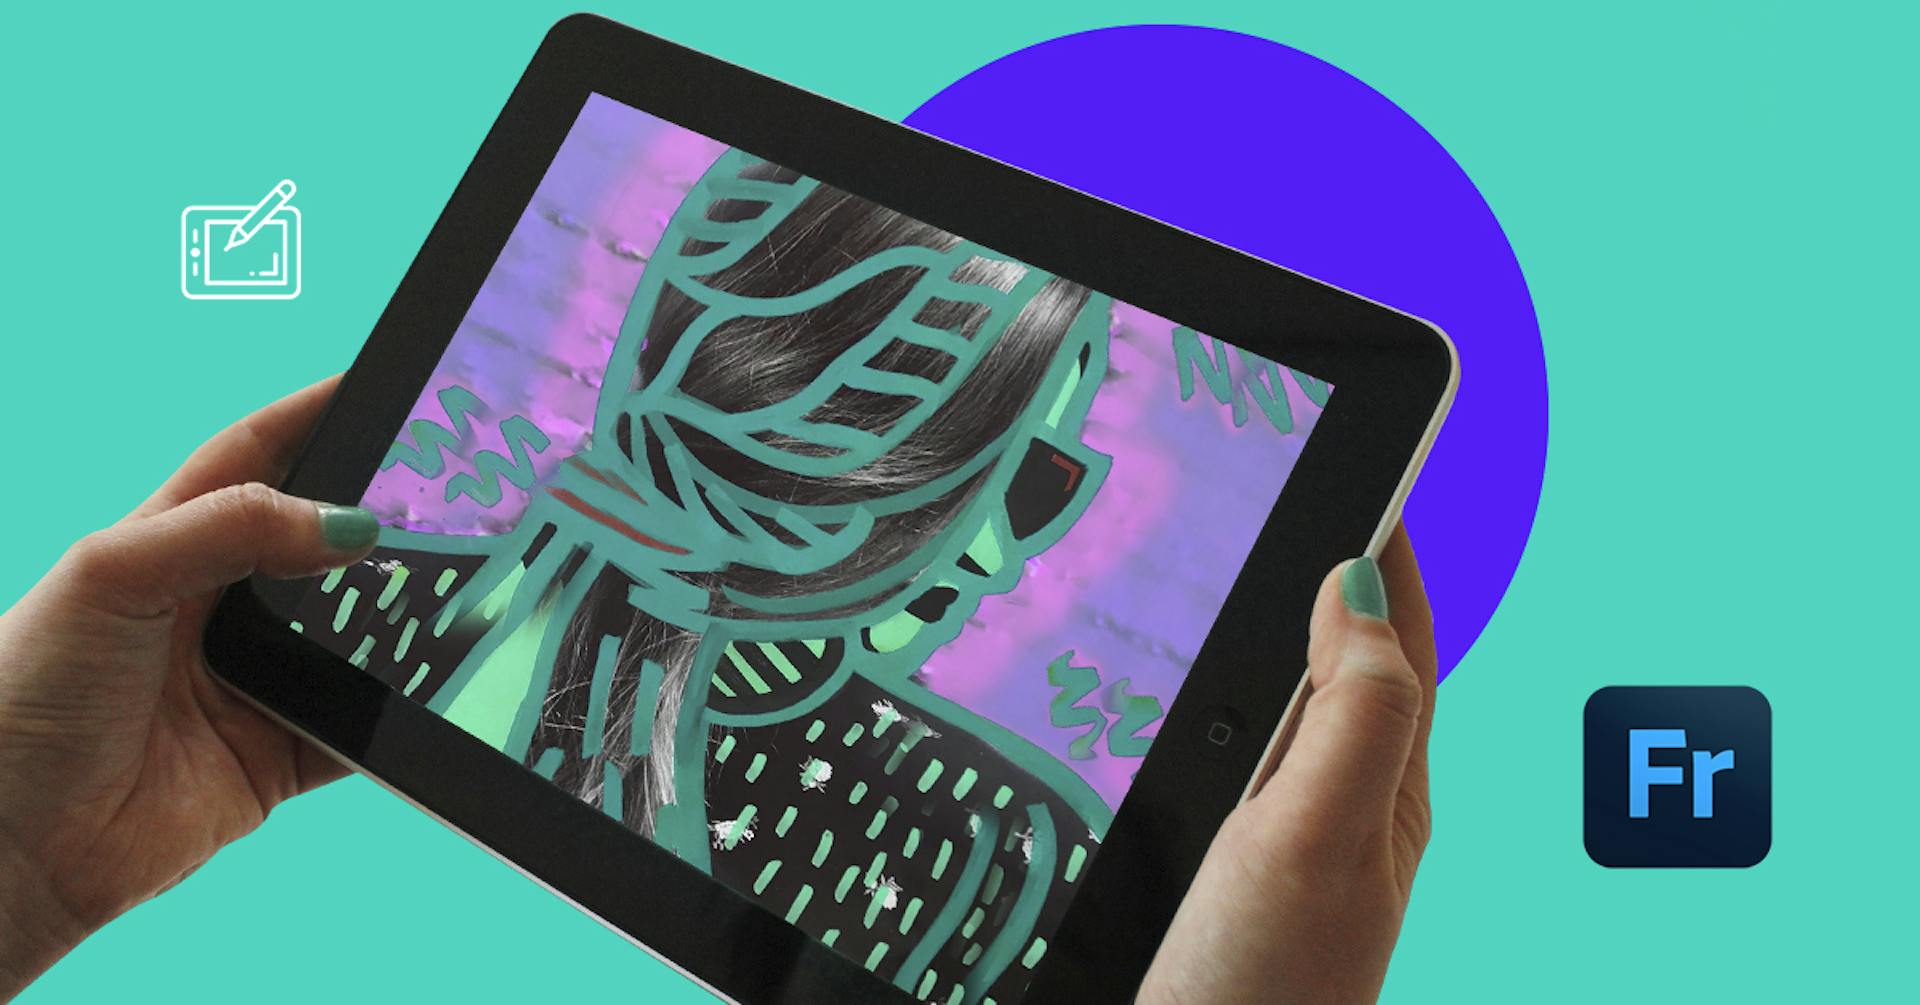 Adobe Fresco: ¡dibuja y pinta con tu tablet como en un papel!